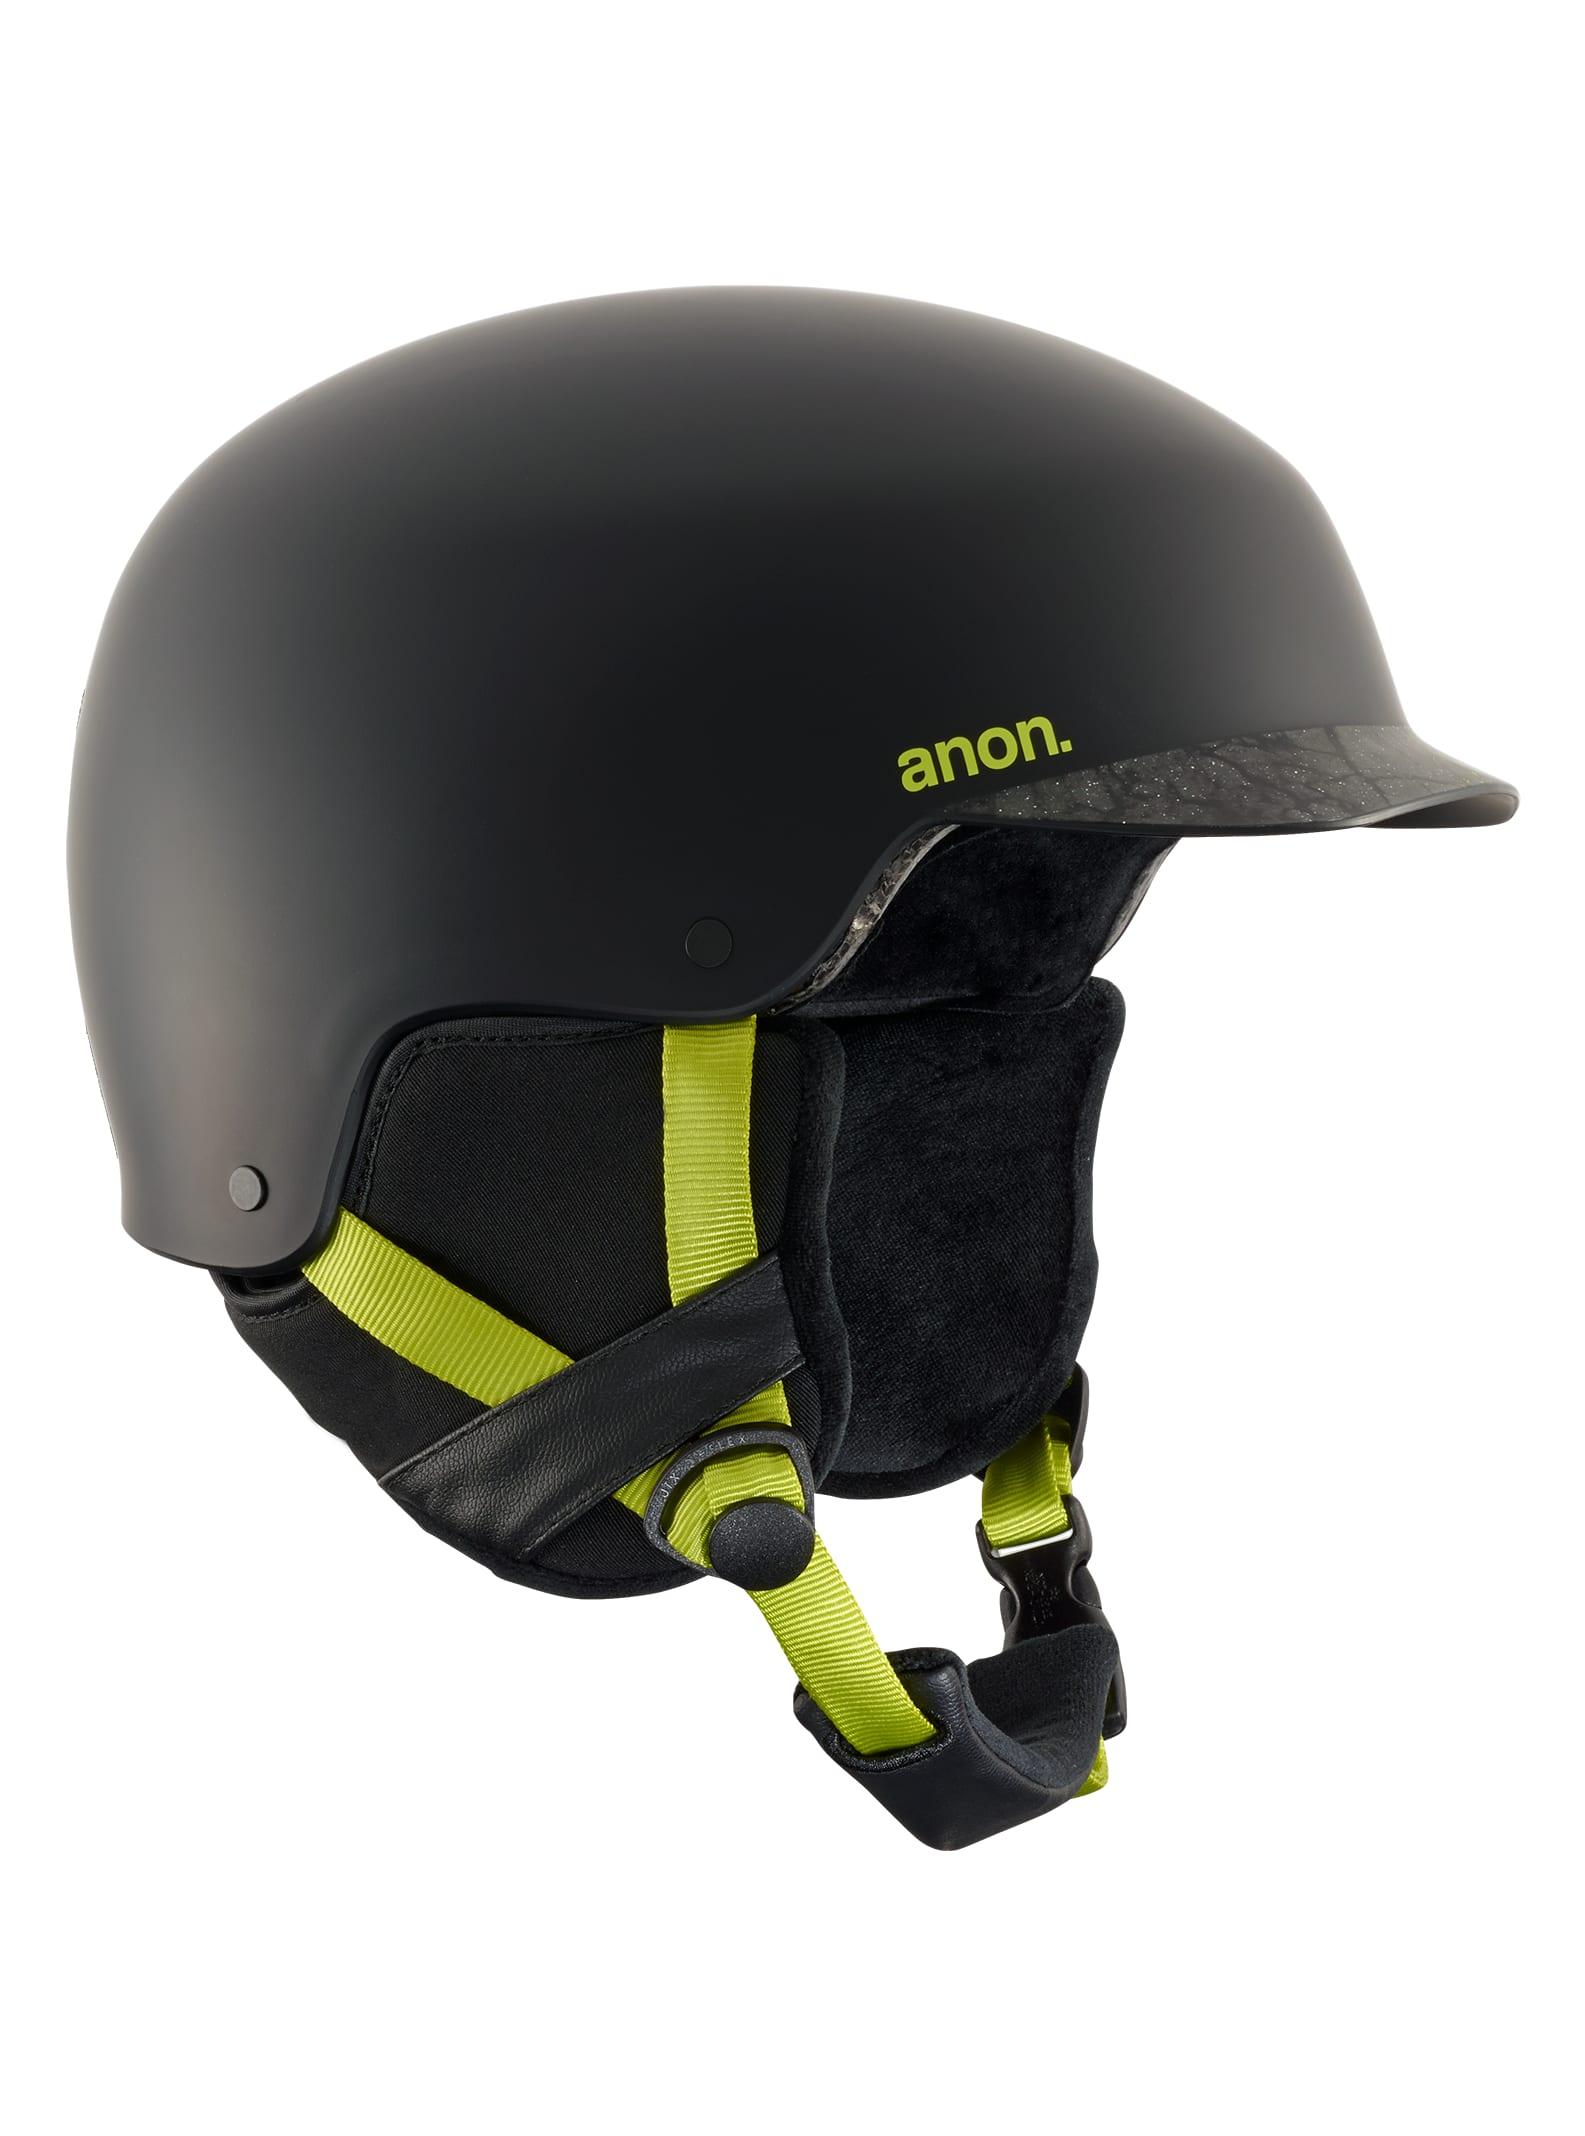 Burton Anon Helmet Size Chart